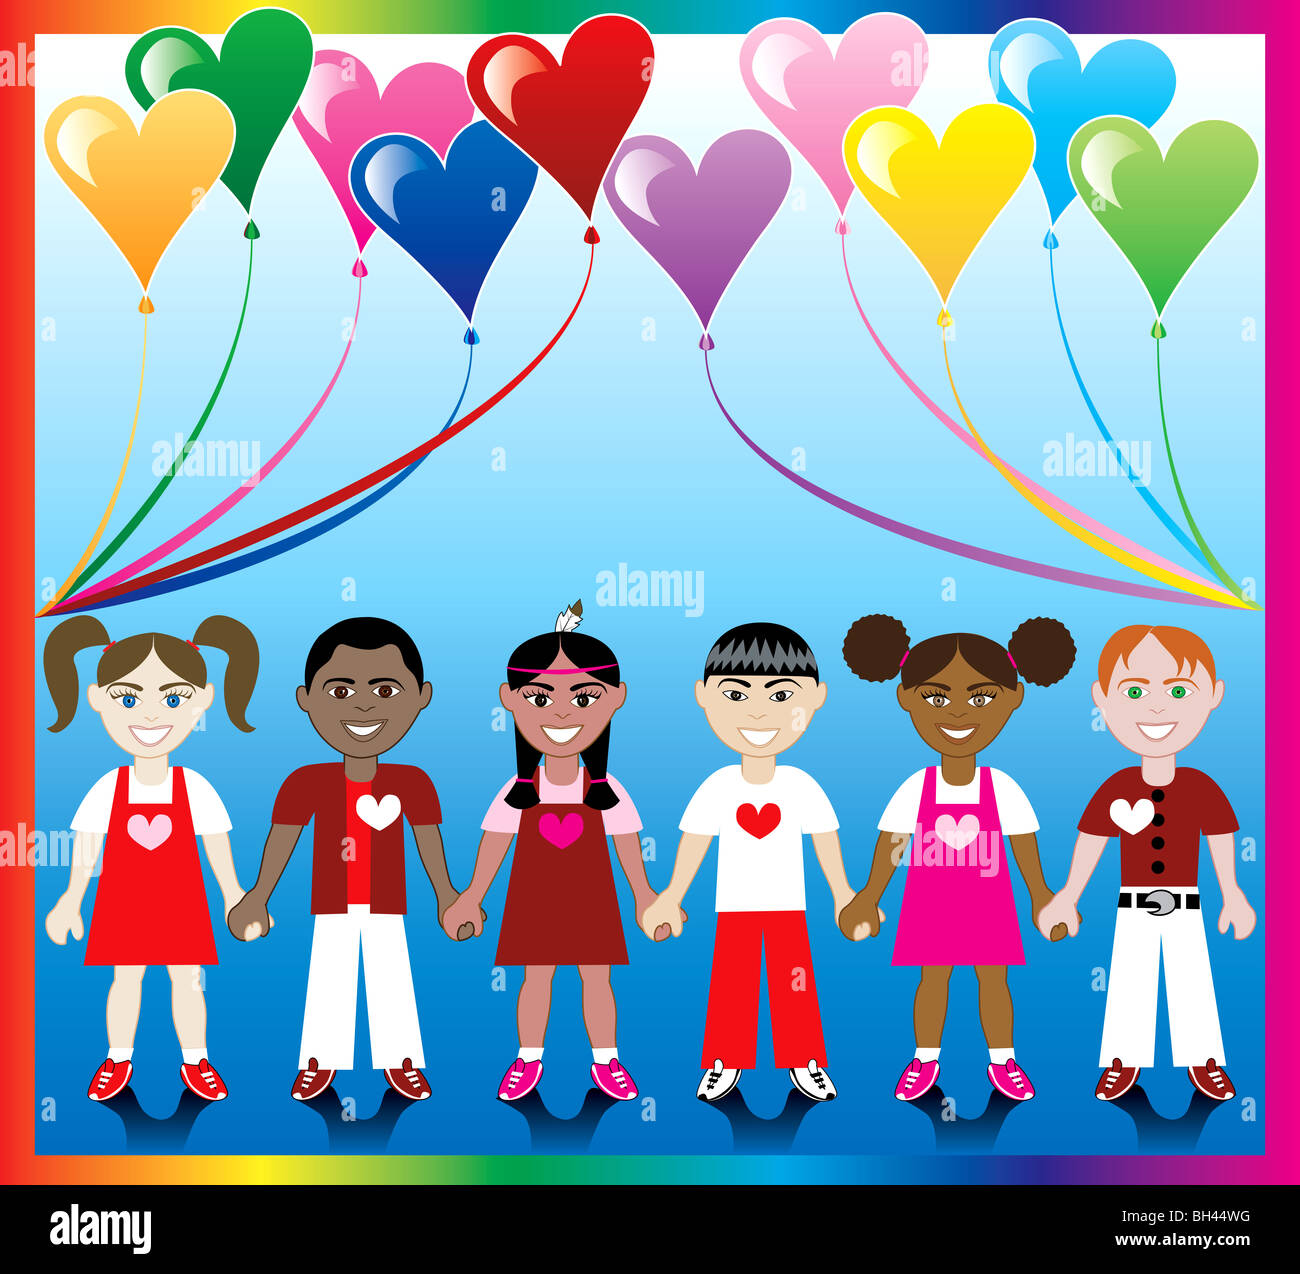 Illustrazione Vettoriale di 10 Cuore di palloncini con uno sfondo colorato e i bambini si tengono per mano con amore i colori e i cuori. Foto Stock